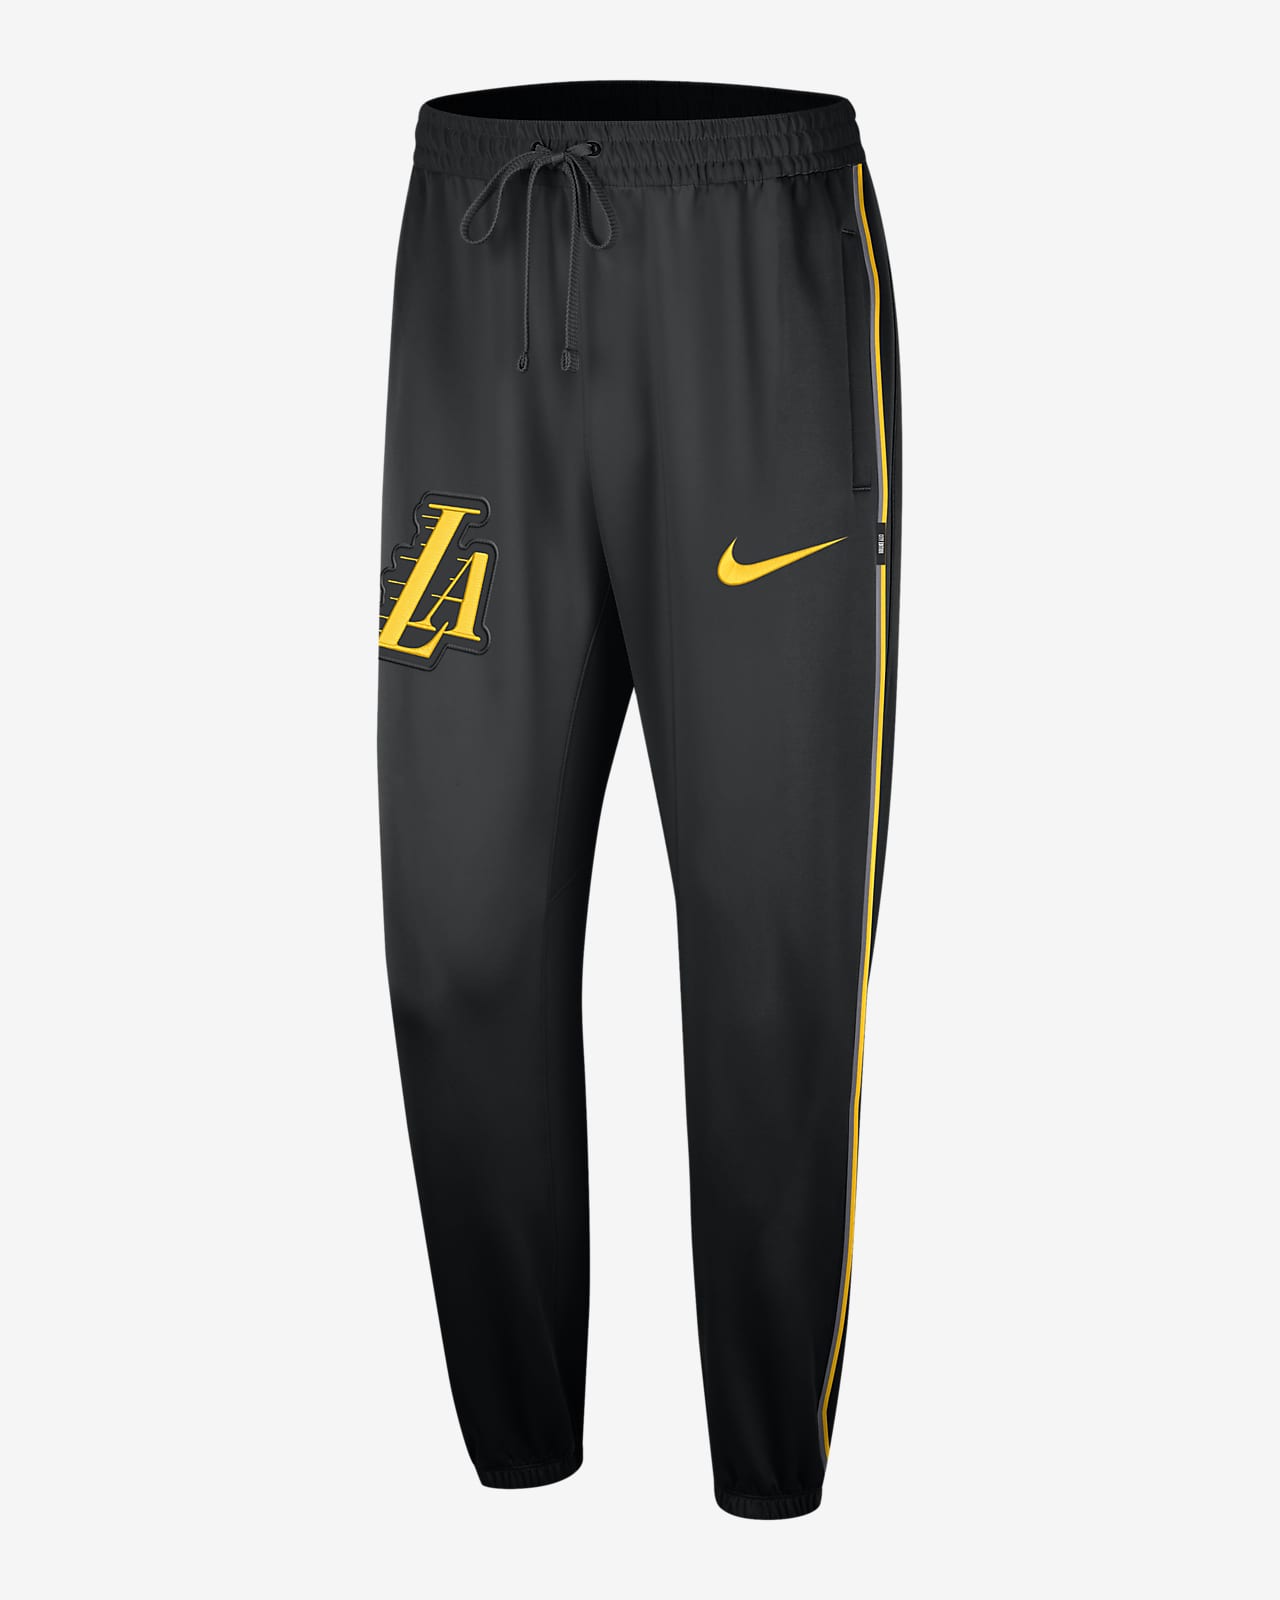 Pantalon NBA Nike Dri-FIT Los Angeles Lakers Showtime City Edition pour homme